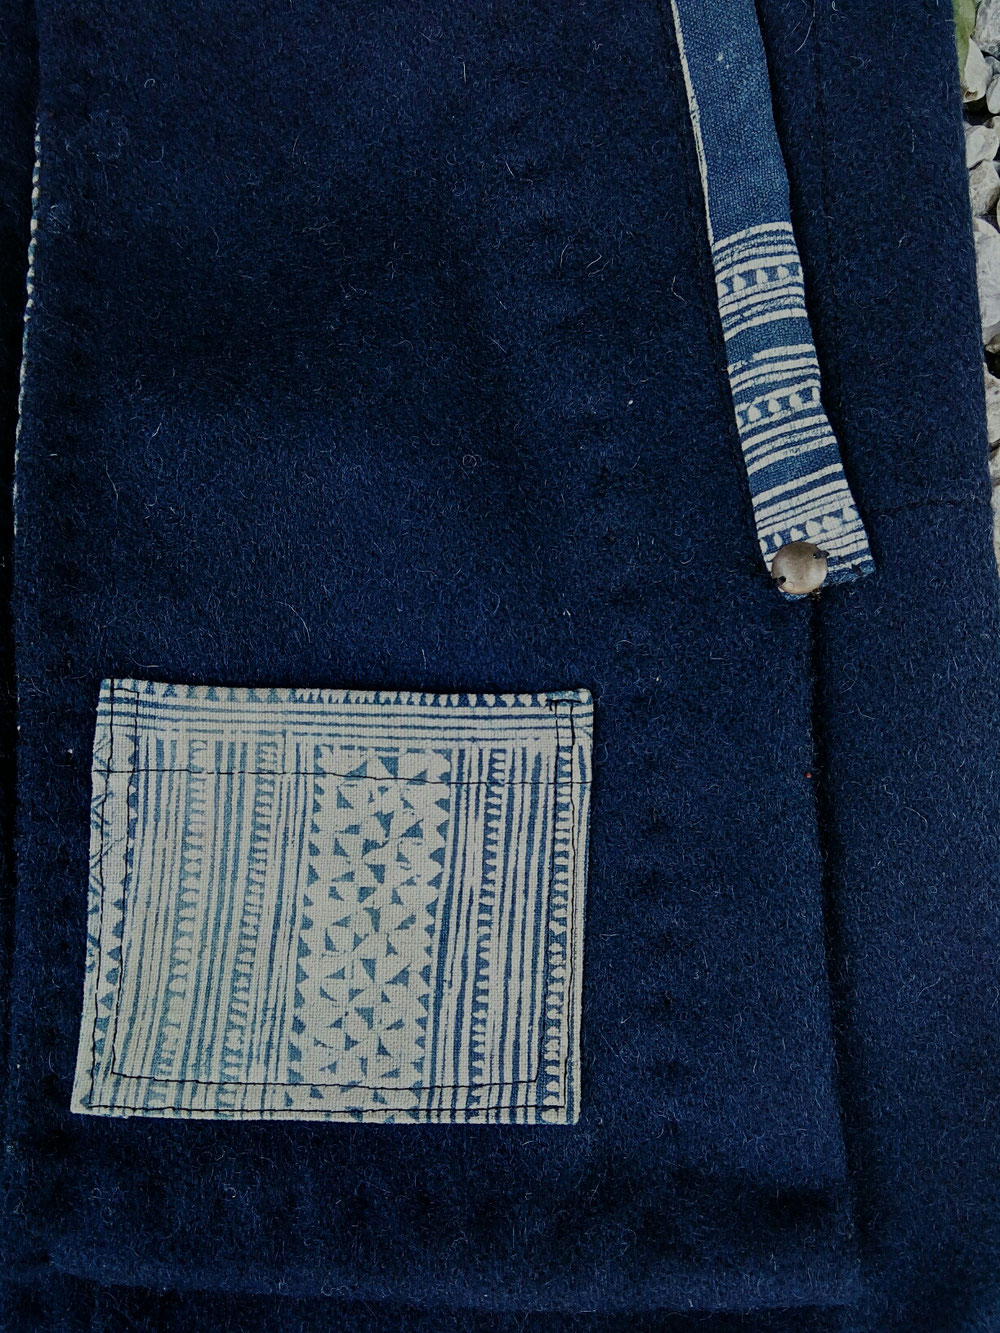 Square Wool Vest 01(pocket details)